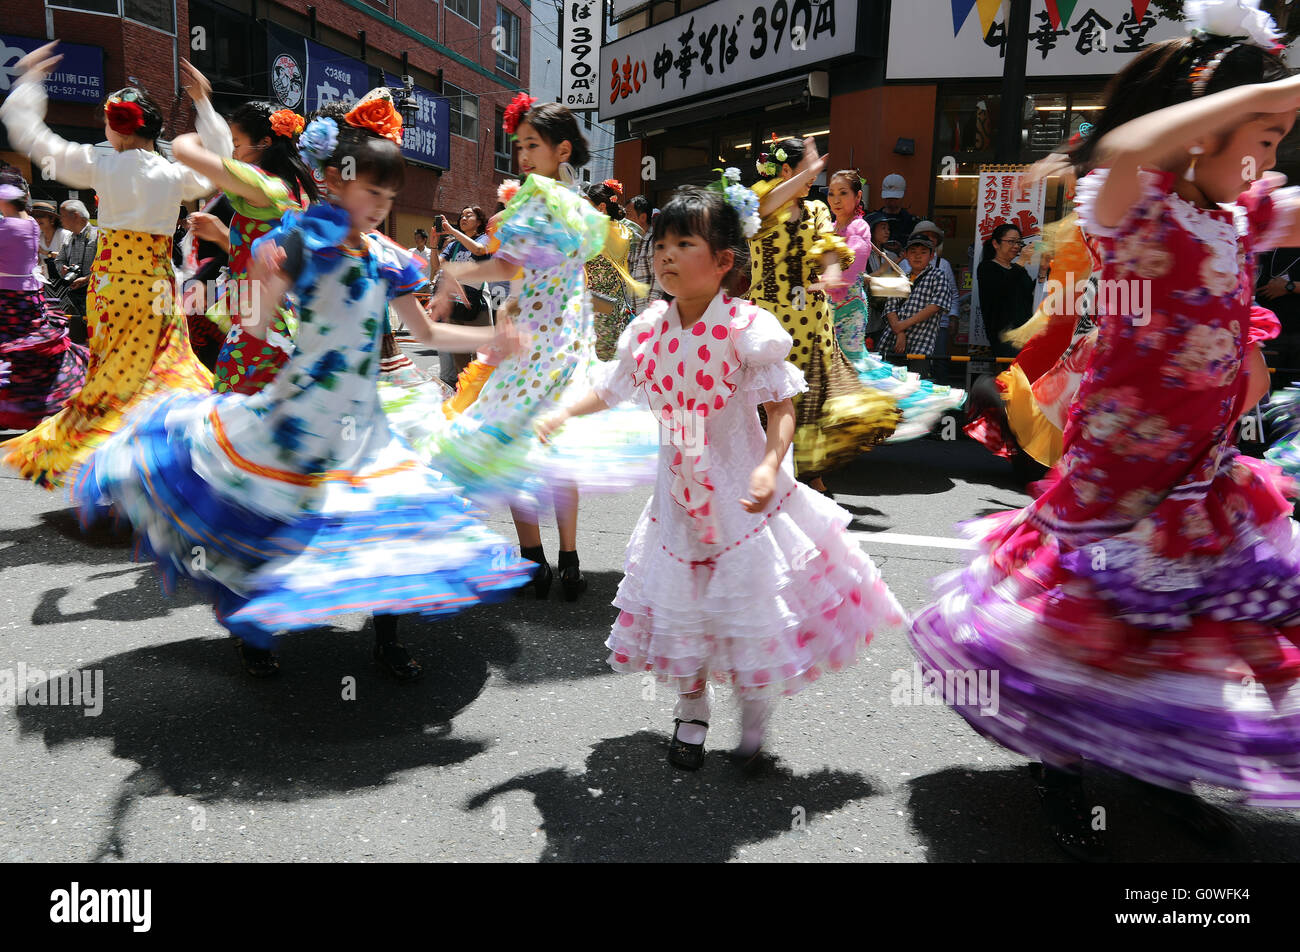 Tokyo, Japon. 4 mai, 2016. Les amateurs de flamenco du Japon en robes colorées effectuer SevillAnnas dansant sur une rue dans le cadre de la "Tachikawa Flamenco" Festival à Tokyo le mercredi 4 mai 2016. Quelque 500 danseurs profitez d'framenco rue danser à l'événement un festival annuel dans la banlieue de Tokyo. © Yoshio Tsunoda/AFLO/Alamy Live News Banque D'Images